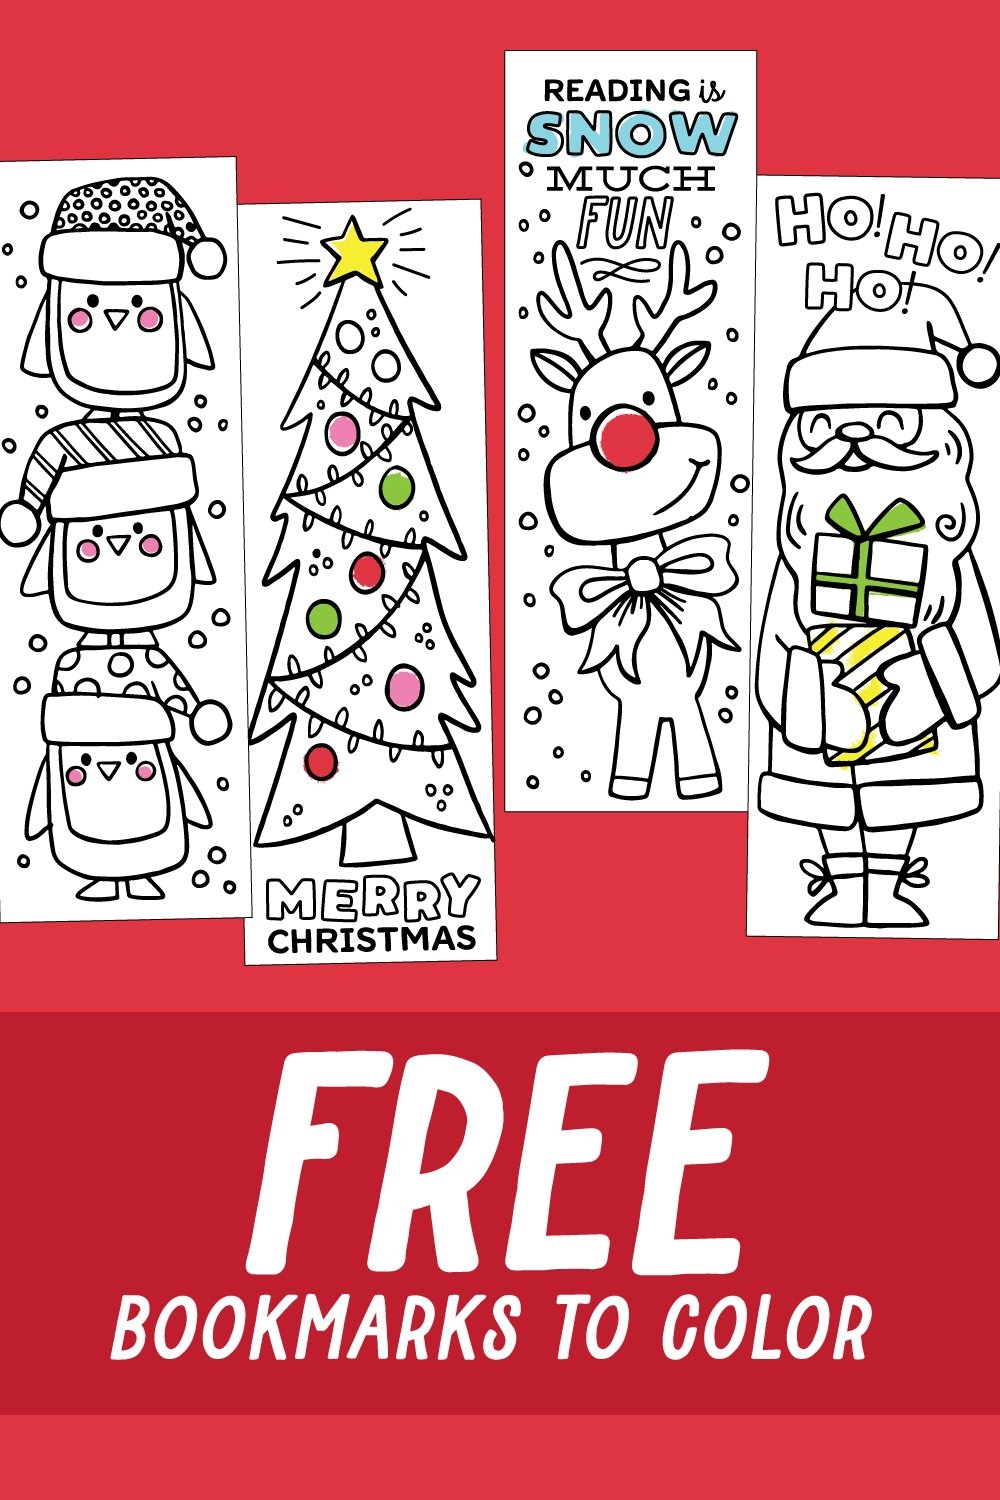 Christmas Bookmarks Free Printable